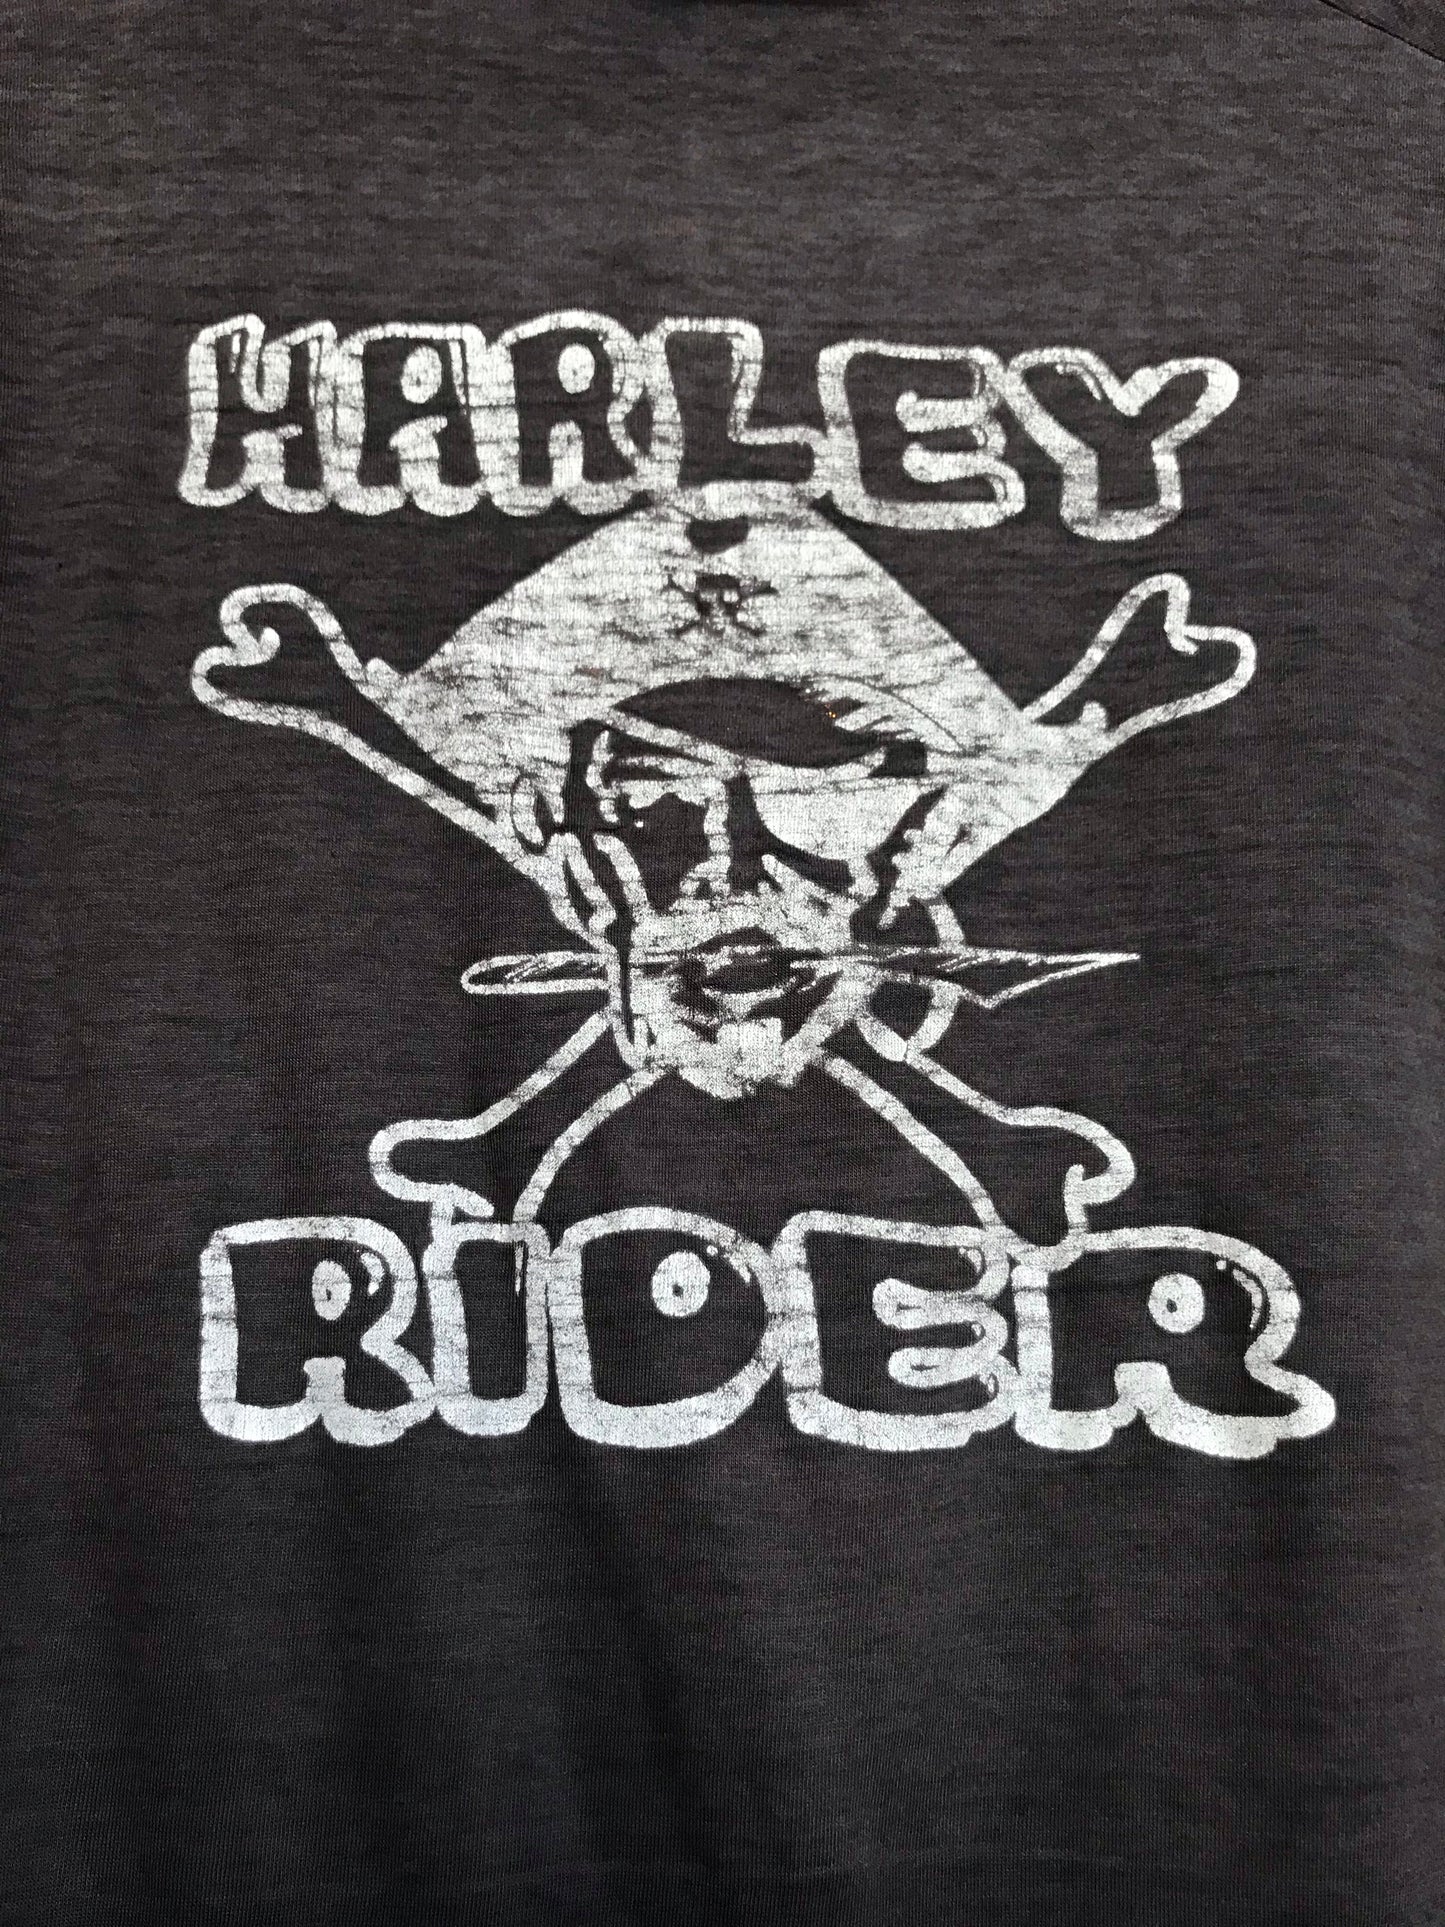 Vintage Pirate Harley Rider Long Sleeve Tee